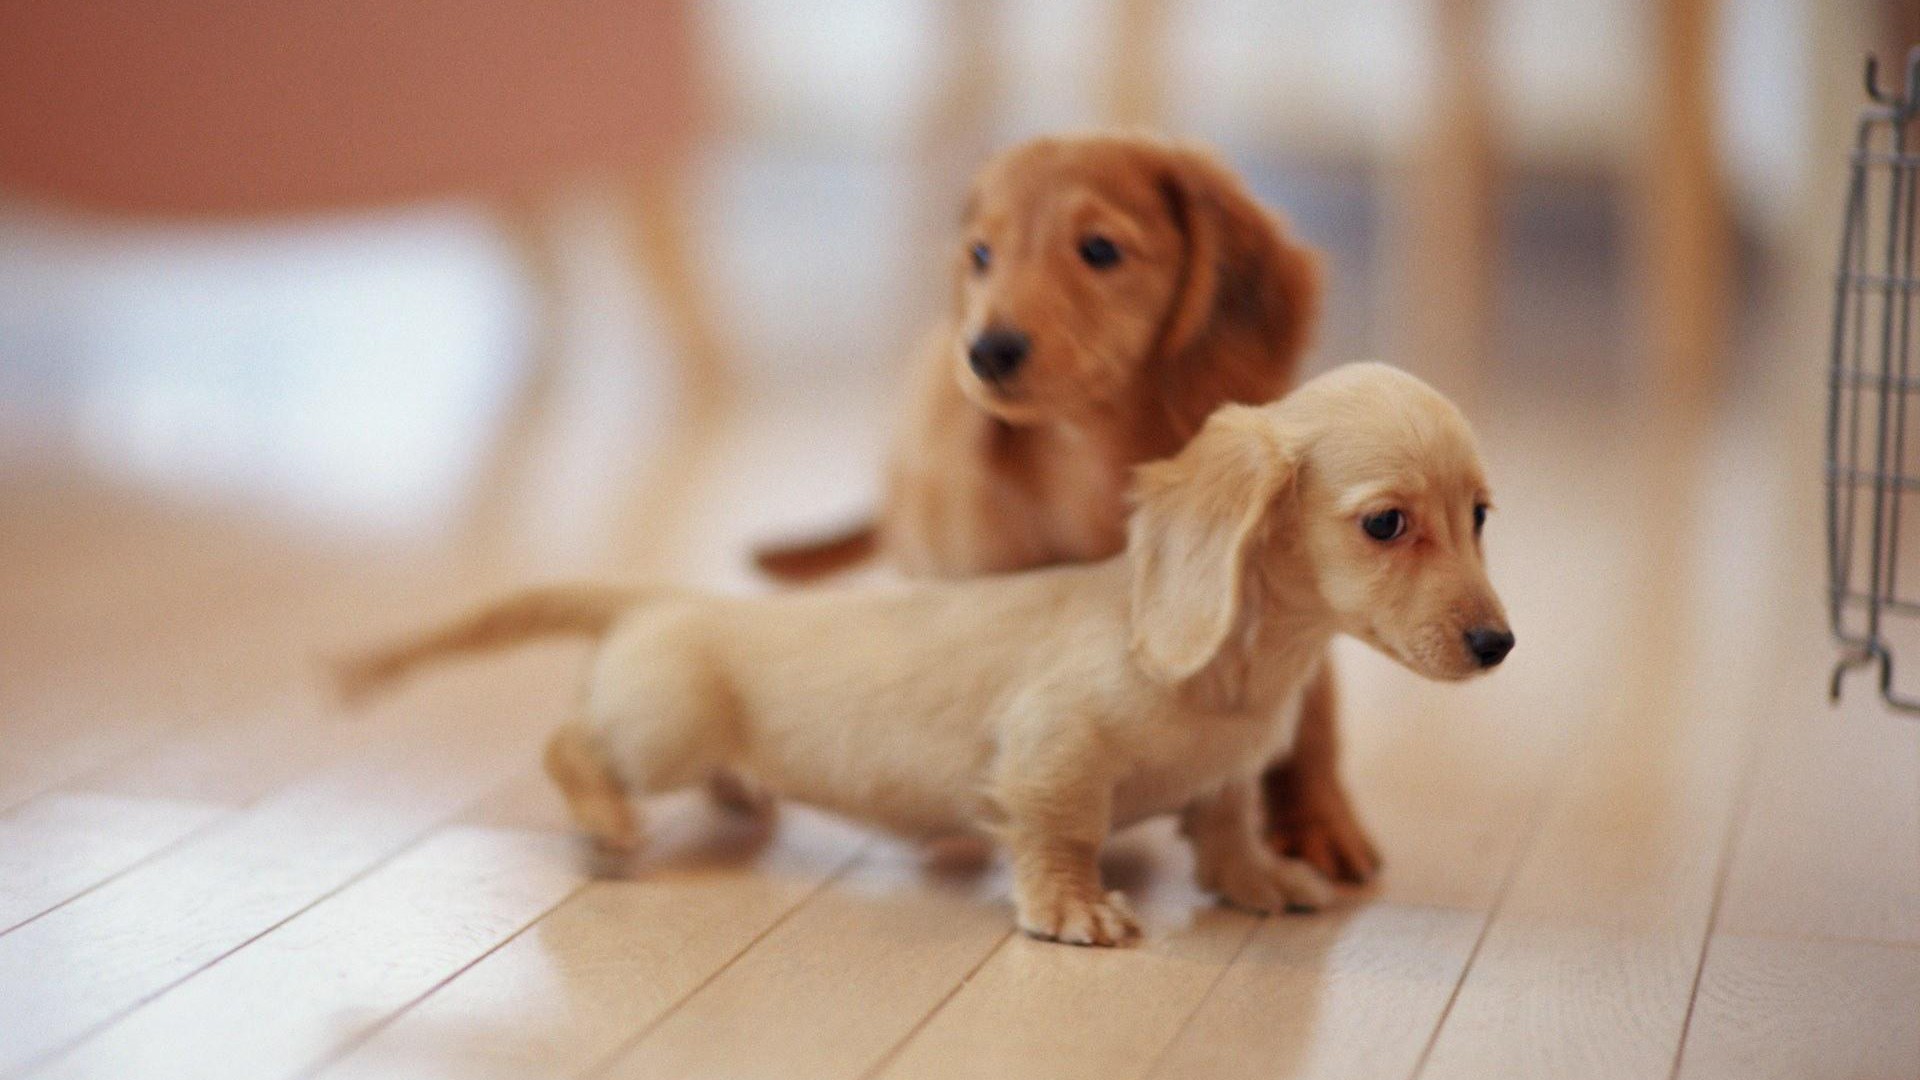 Cute Puppies Pictures Desktop Wallpaper 1920x1080